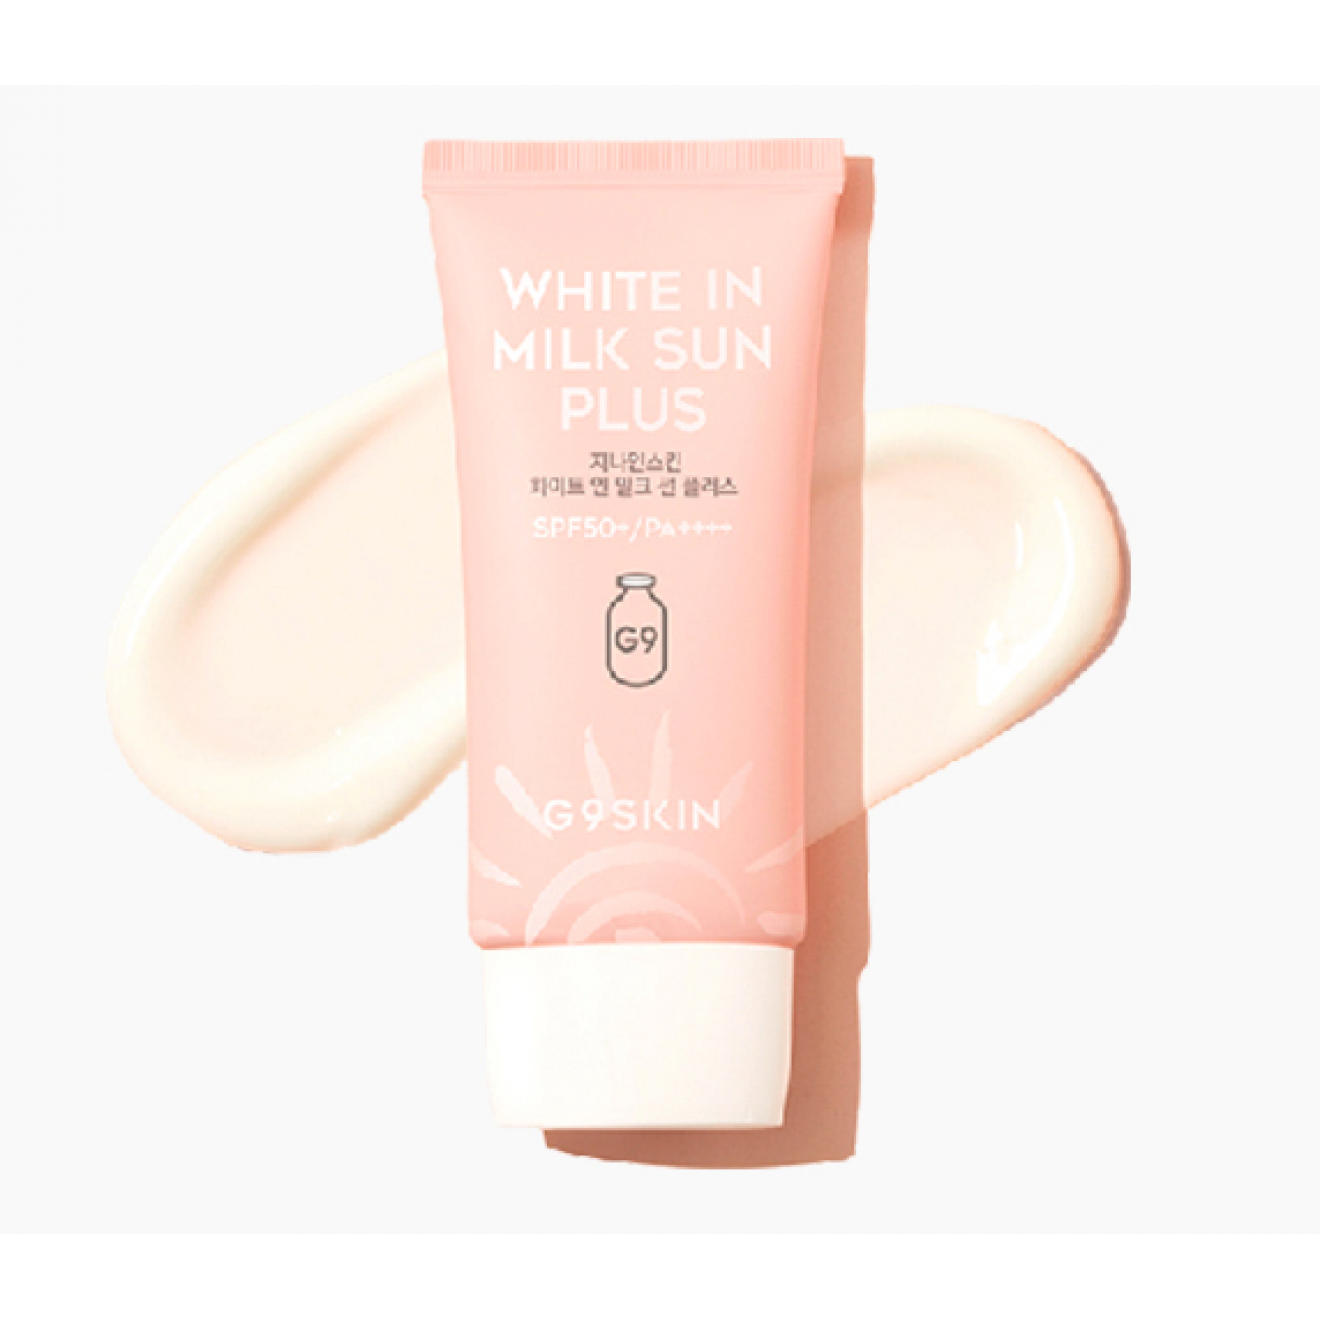 Crema faciala-G9Skin, White In Milk Sun SPF50+ PA++++, Crema faciala cu protectie solara